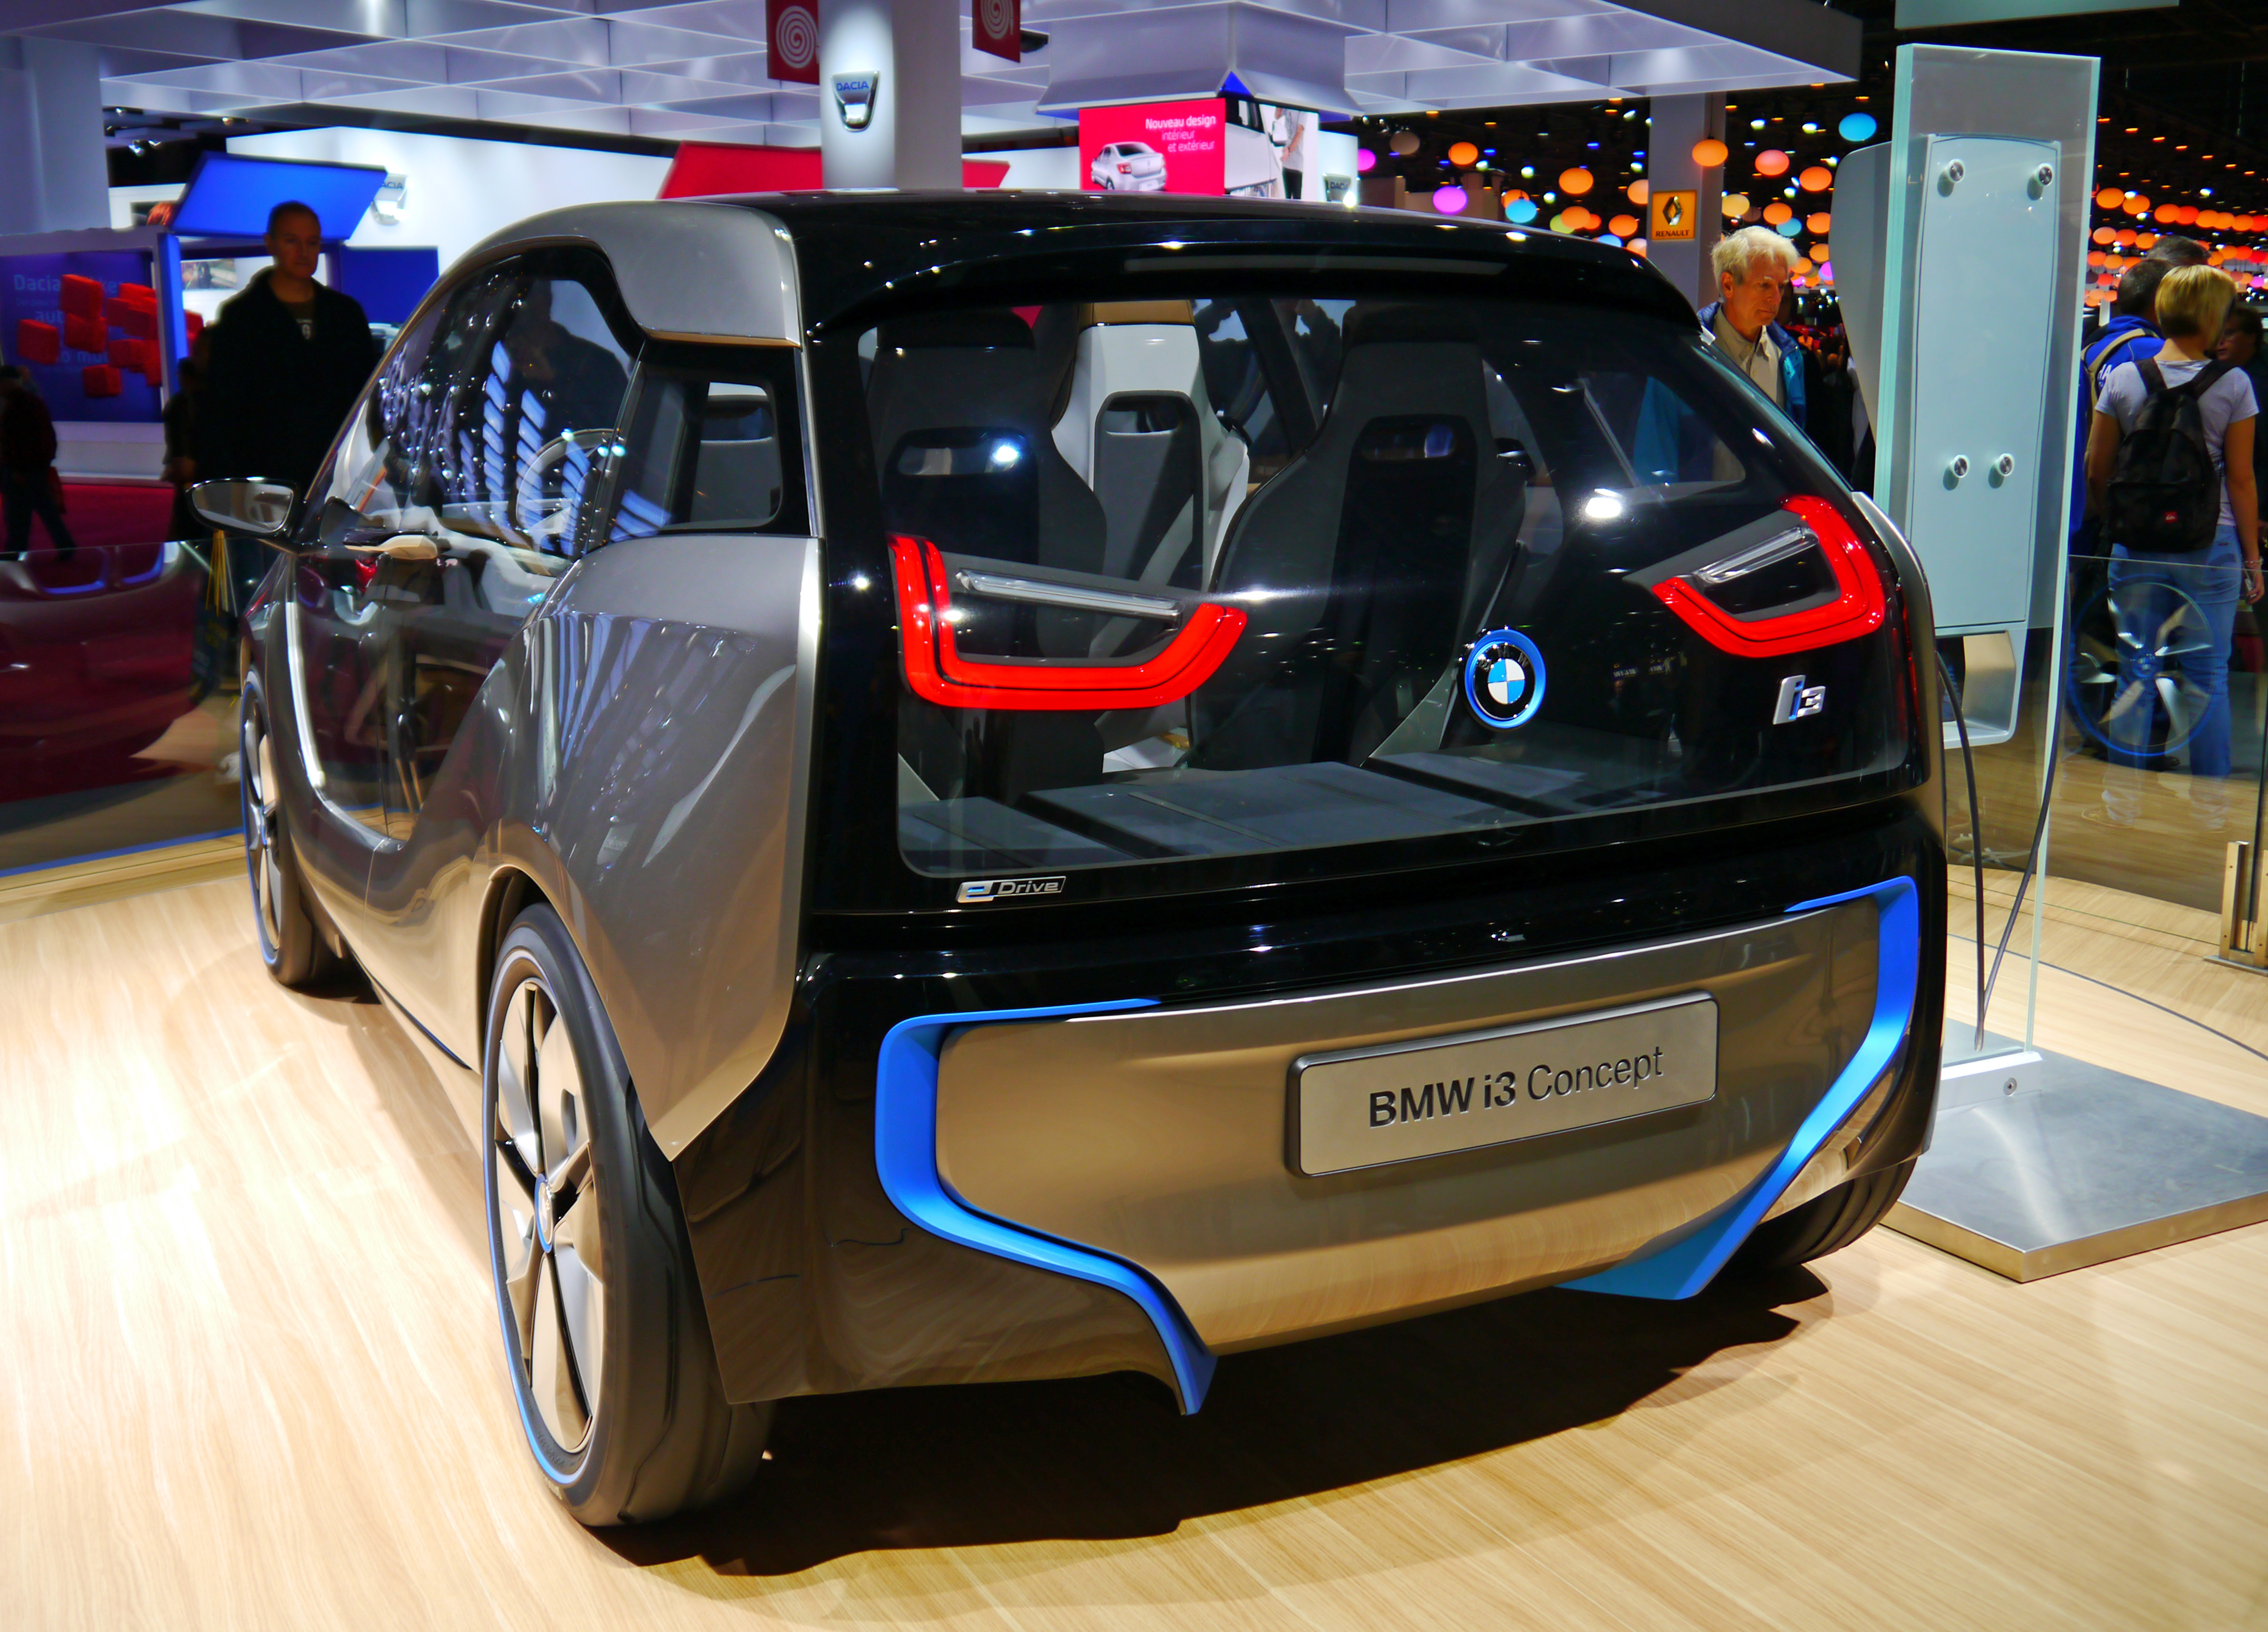 Автомобиль на л. Музей Германии i3 Concept. Китайский автопром электромобиль l9. Многофункциональный автомобиль l2.